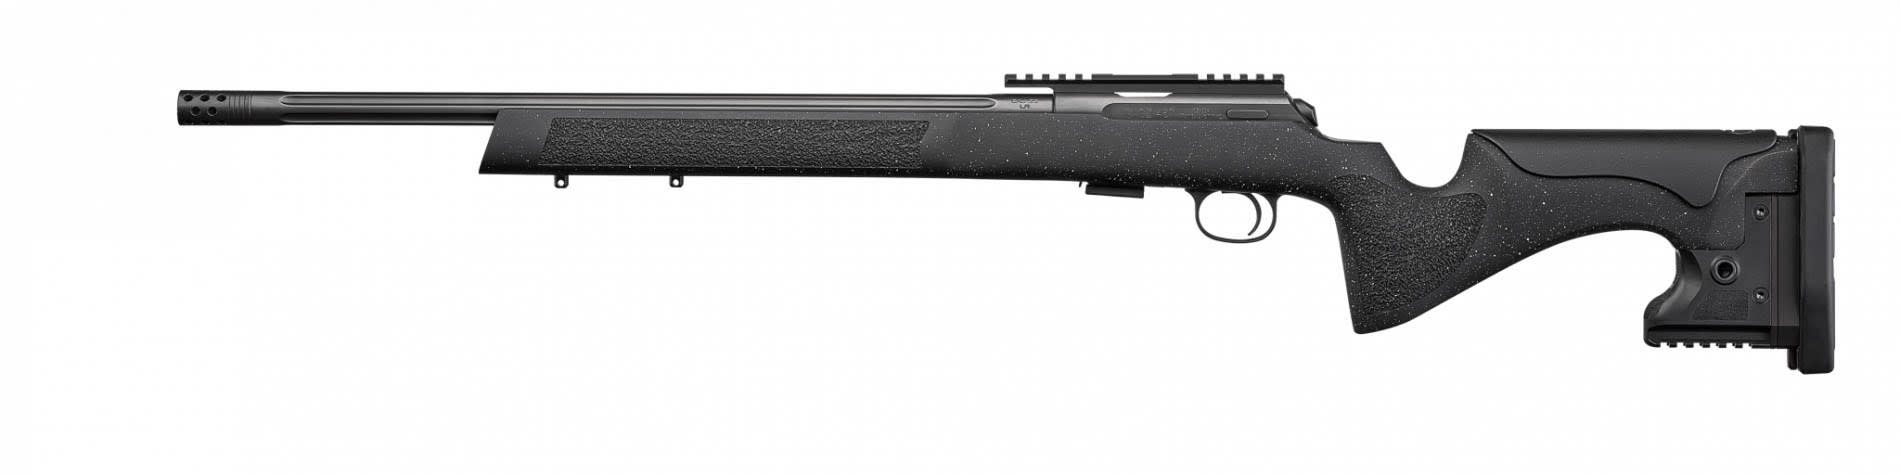 CZ 457 Long Range Precision Bolt-Action Rifle